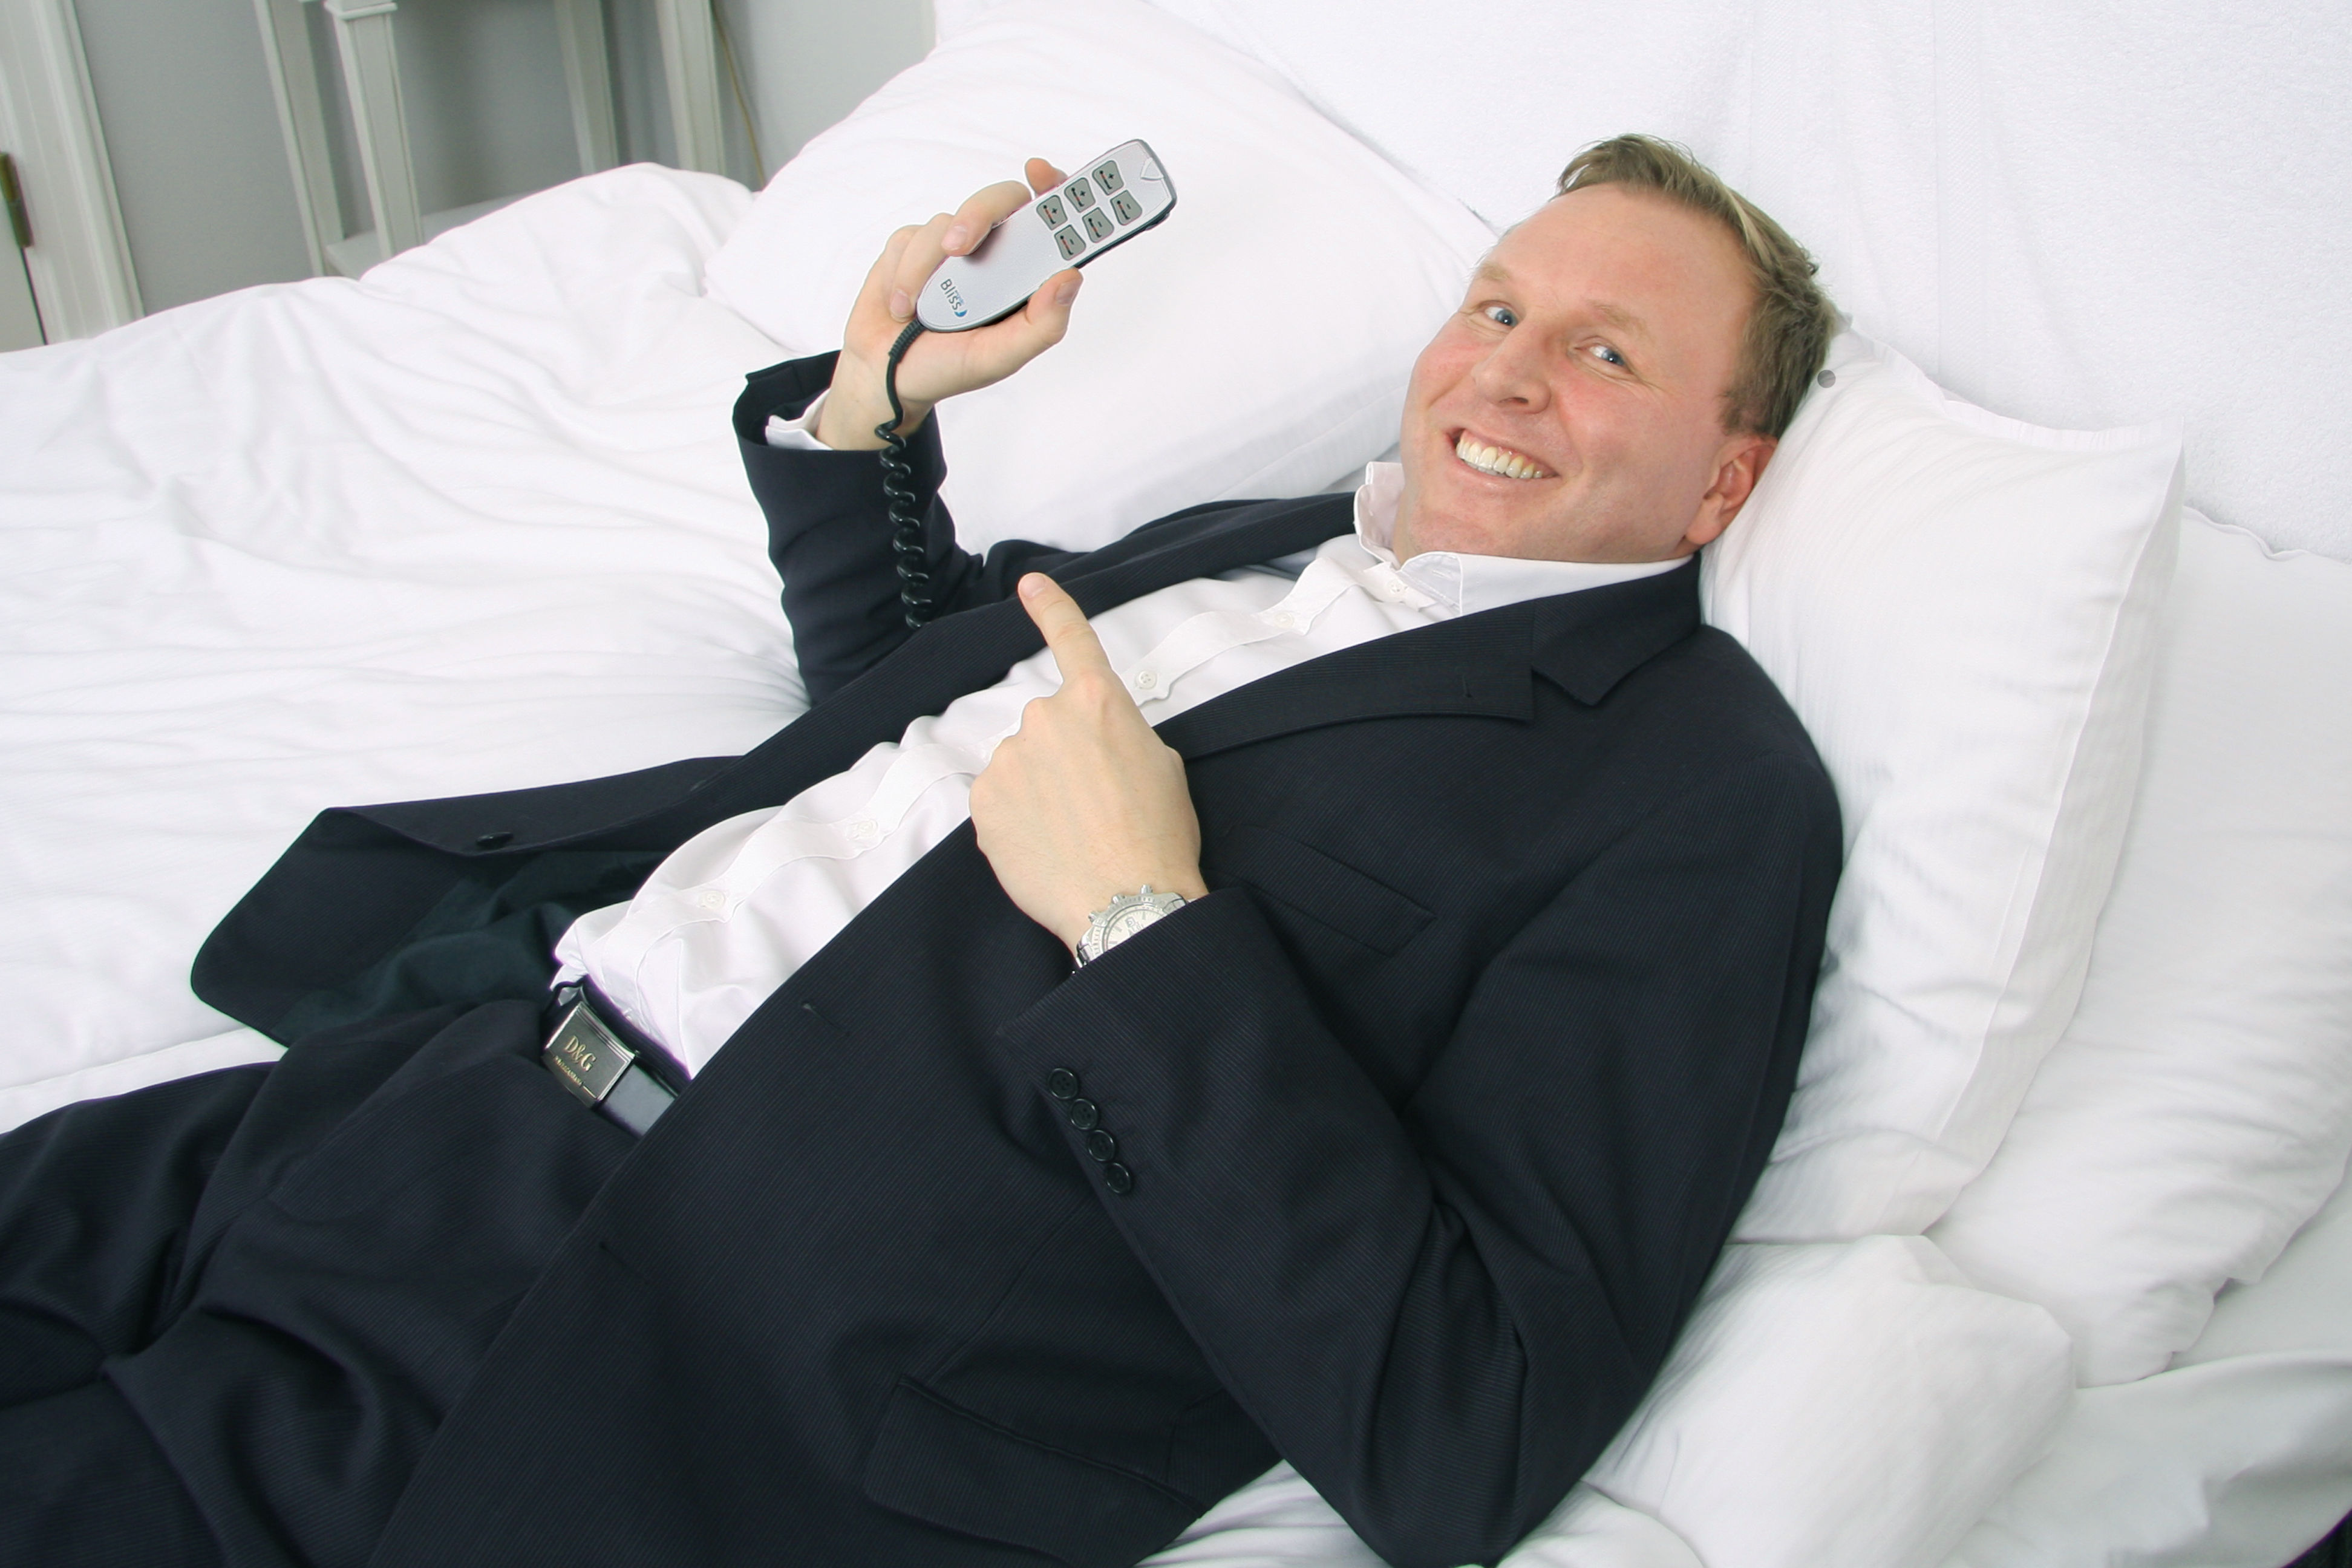 Mattias Sörensen, VD för Bliss Nordic, visar hur sängen Bliss enkelt justeras enligt hotellgästens personliga önskemål med hjälp av fjärrkontroll.